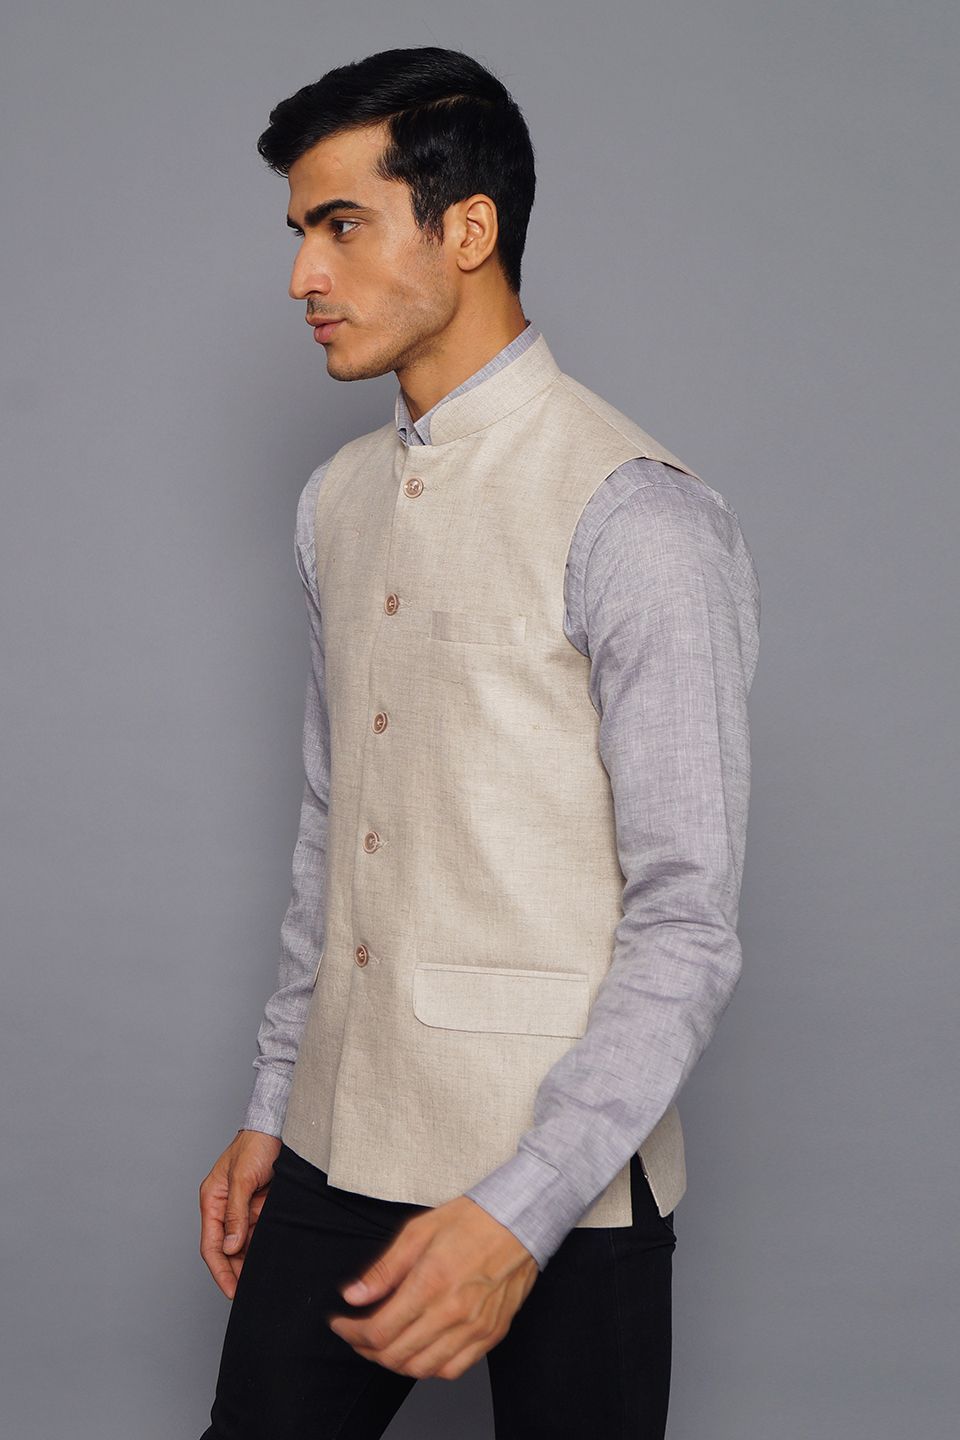 Wintage Men's Pure Linen Nehru Jacket Vest Waistcoat: Natural